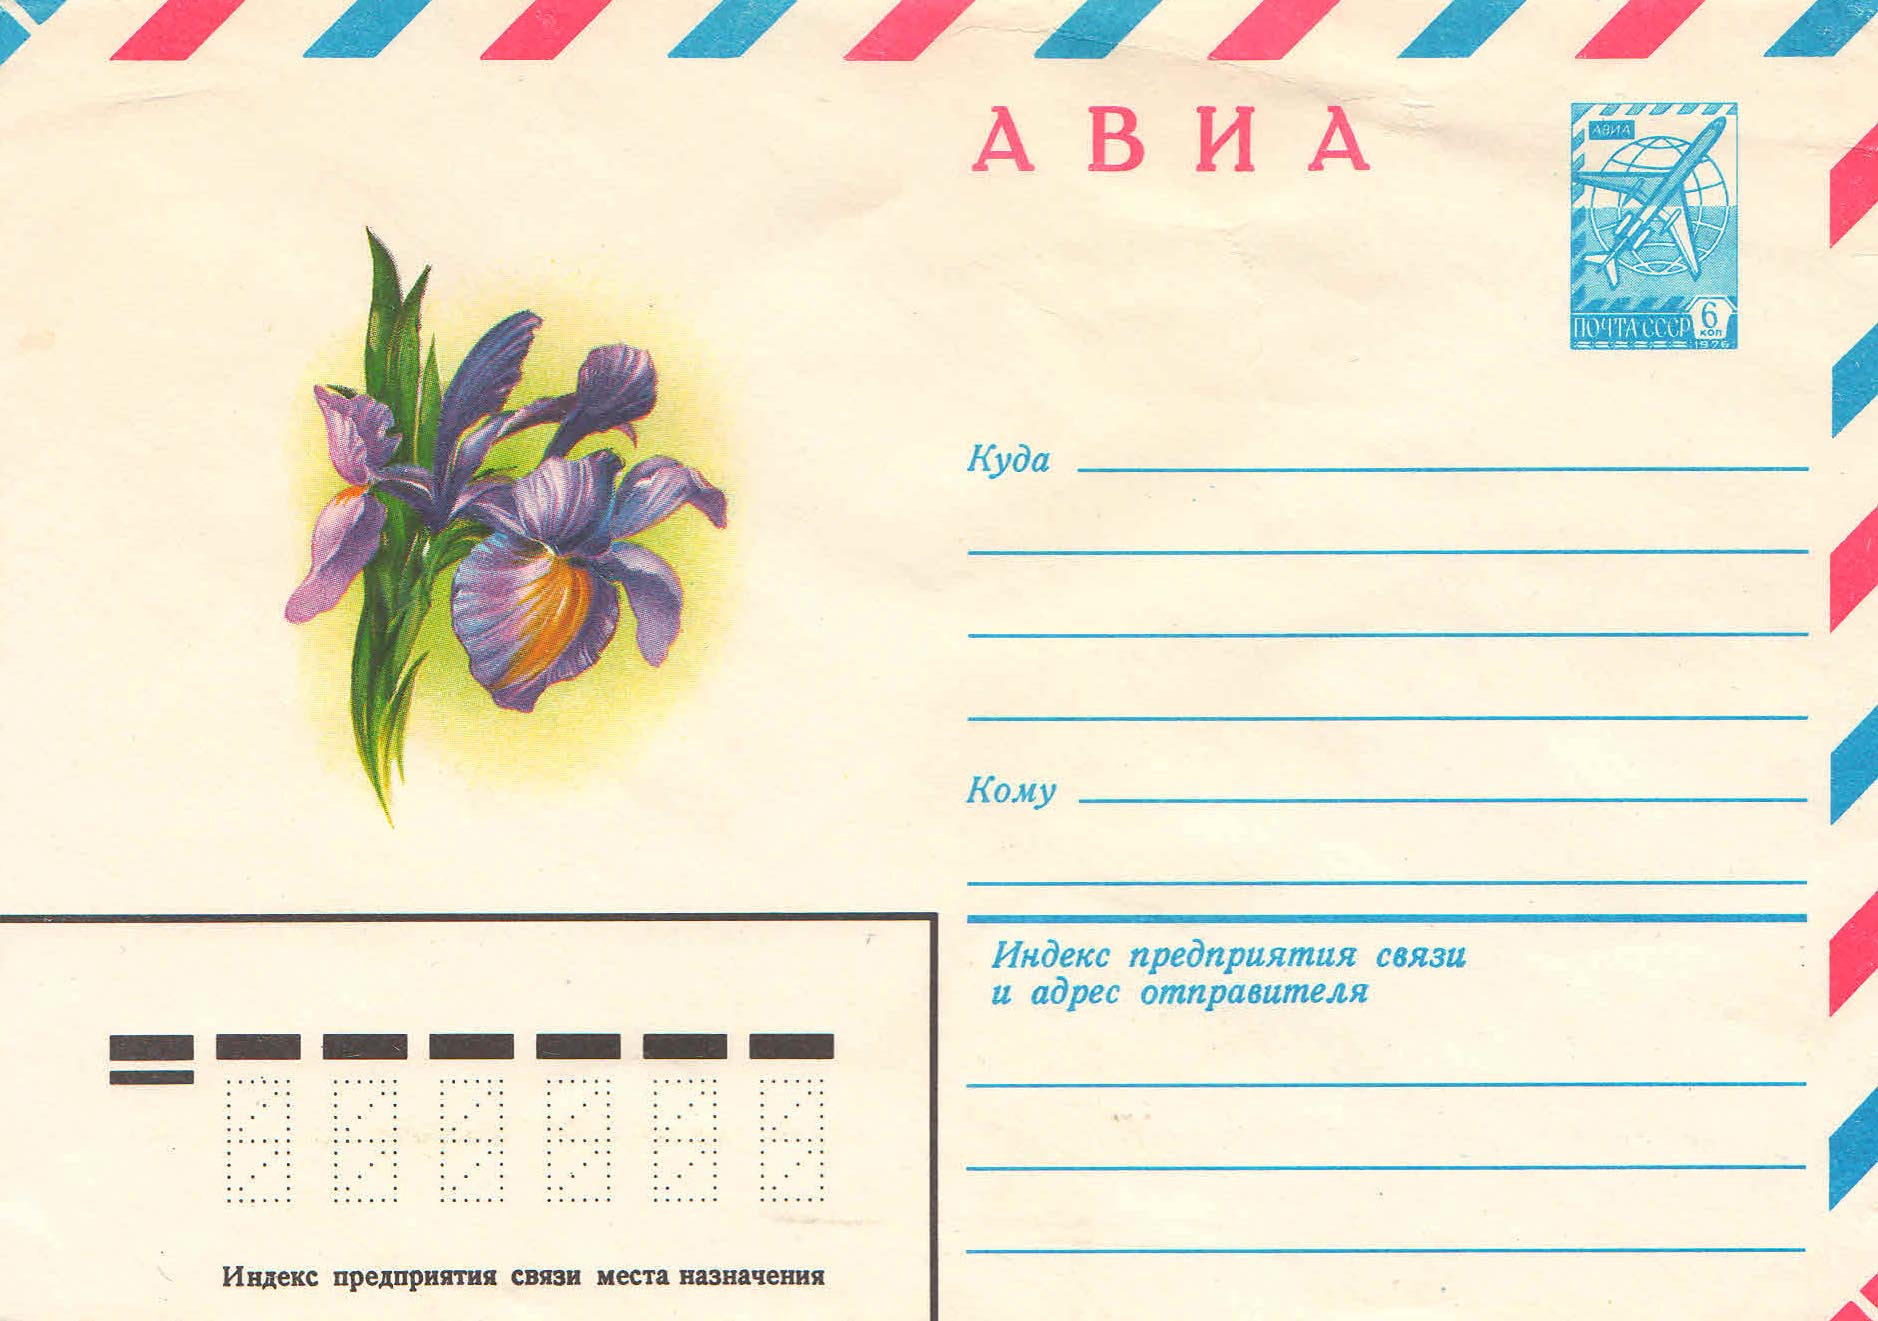 Распечатка конверта для письма